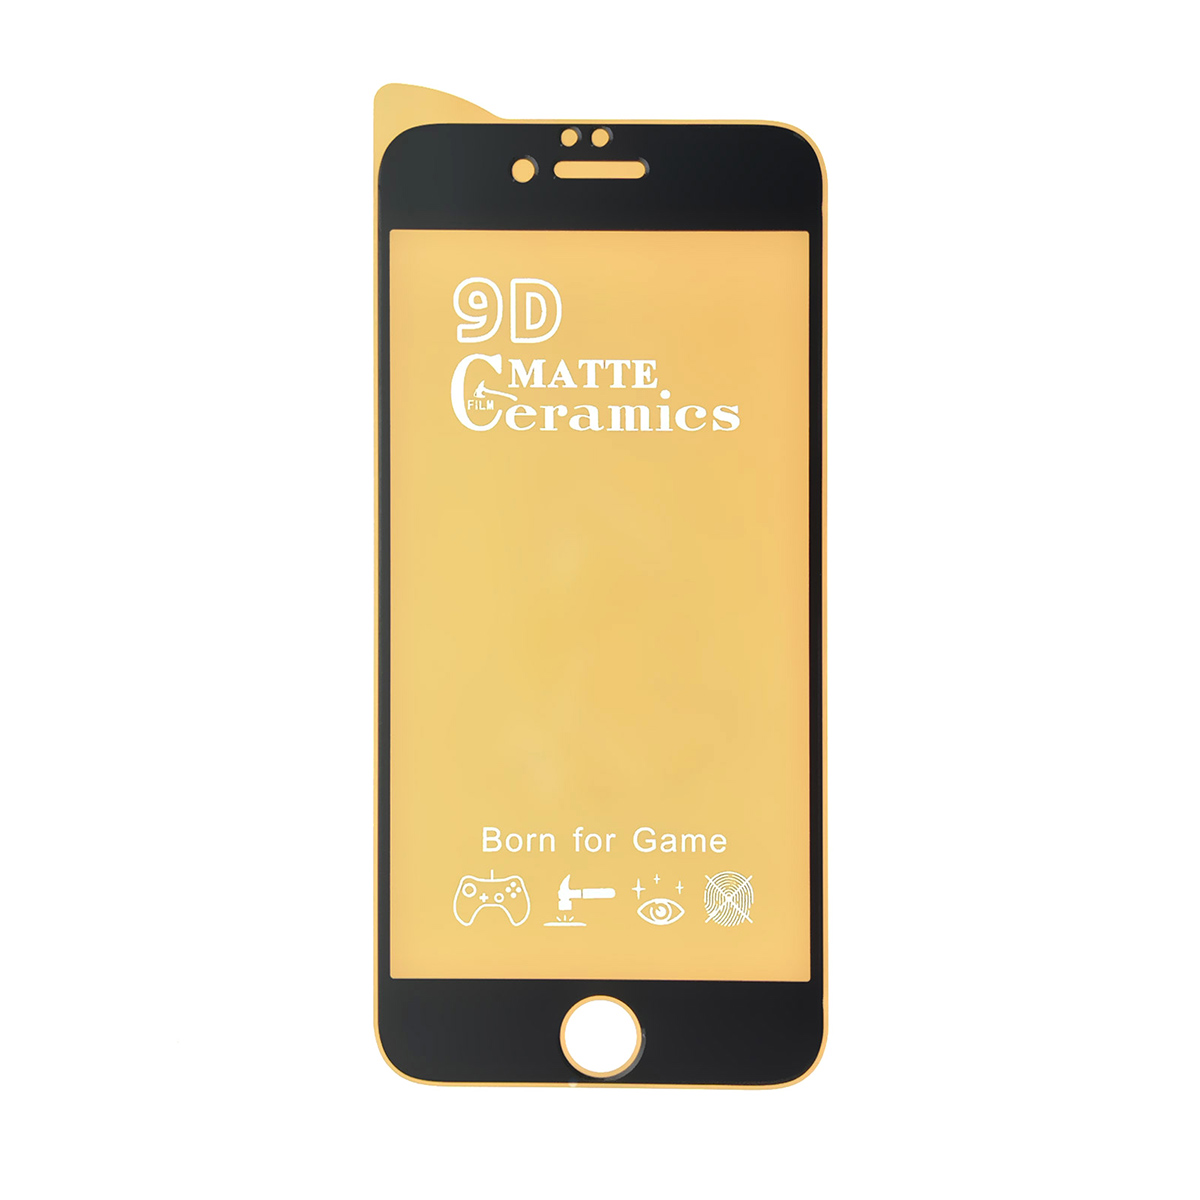 Защитное стекло 9D Ceramics для APPLE iPhone 6, iPhone 6G, iPhone 6S, матовое, цвет черный.